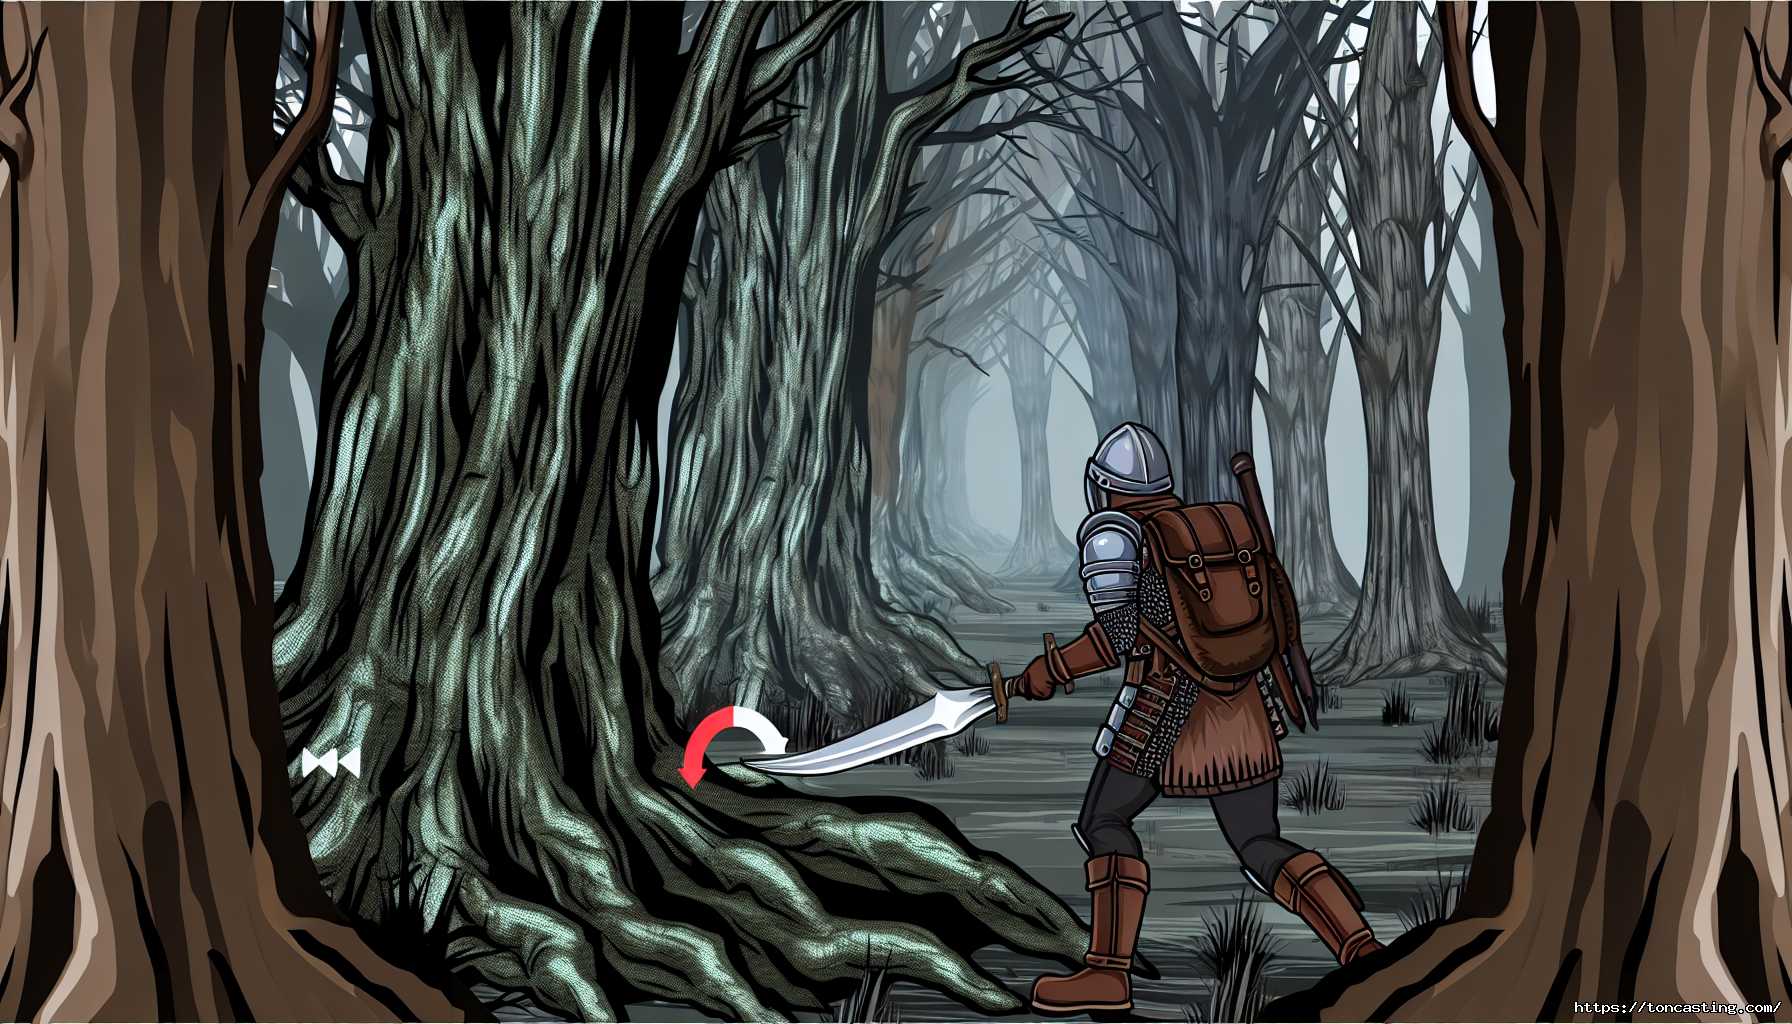 Traverser les Bois Abyssaux d'Elden Ring : Guide Complet pour Atteindre le Boss du DLC Shadow of the Erdtree